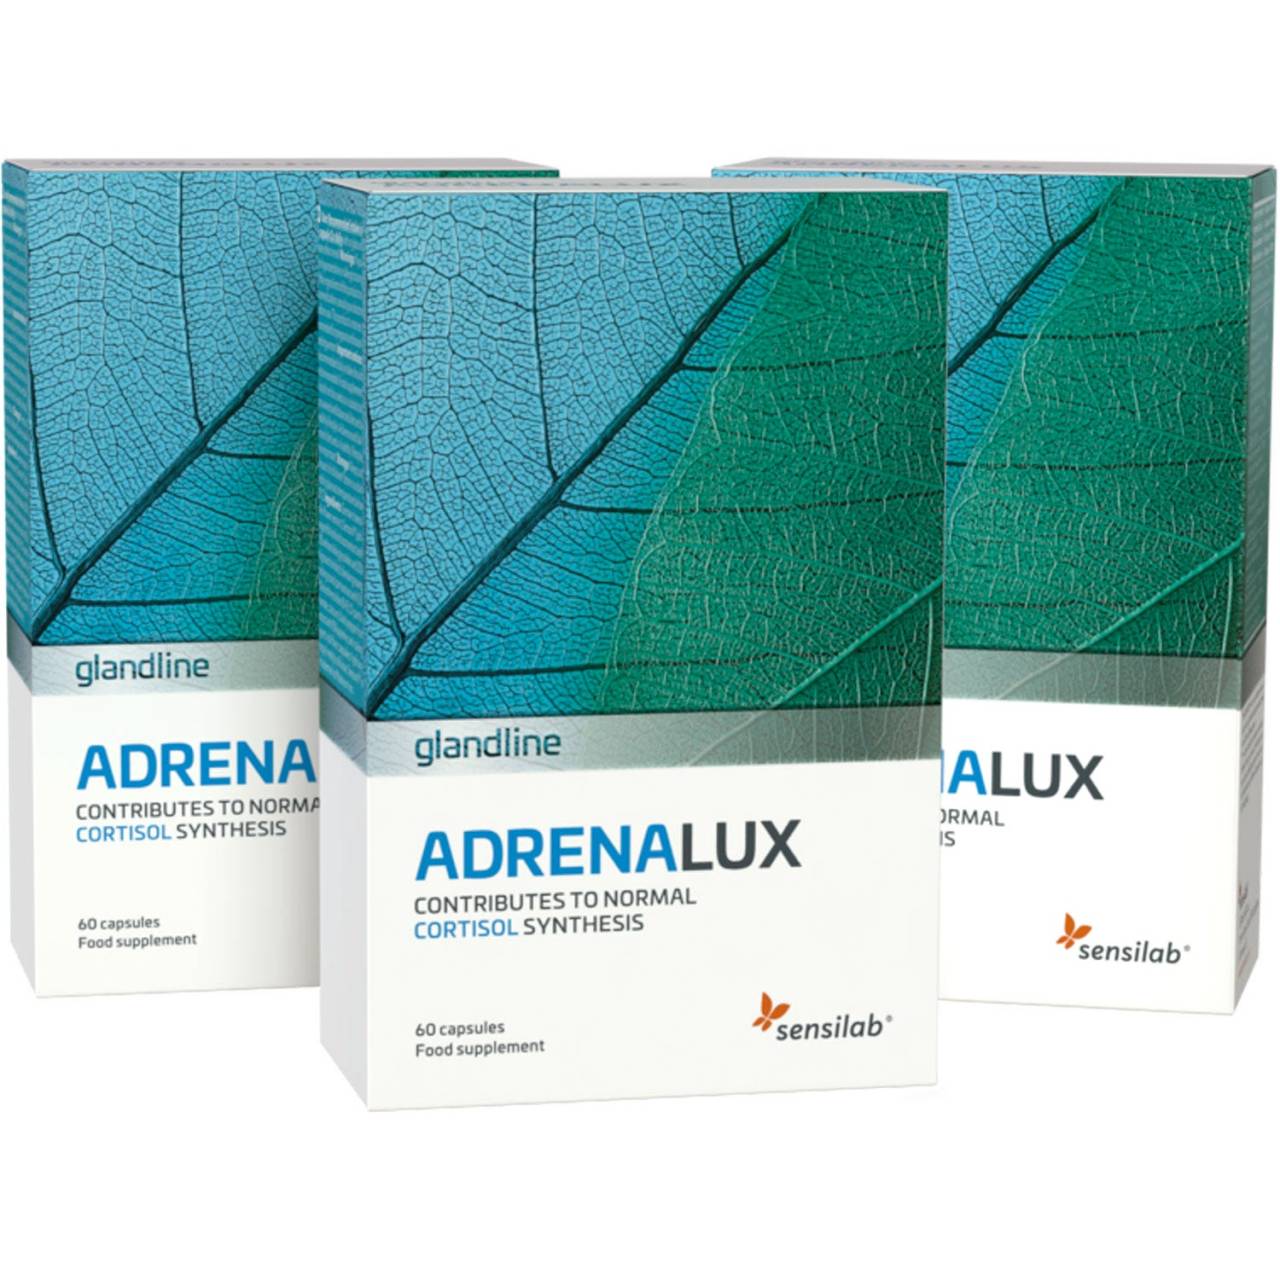 AdrenaLux 1+2 GRATIS - Bilanciatore di cortisolo | Affrontare lo stress più facilmente | 3x 60 capsule | Sensilab.